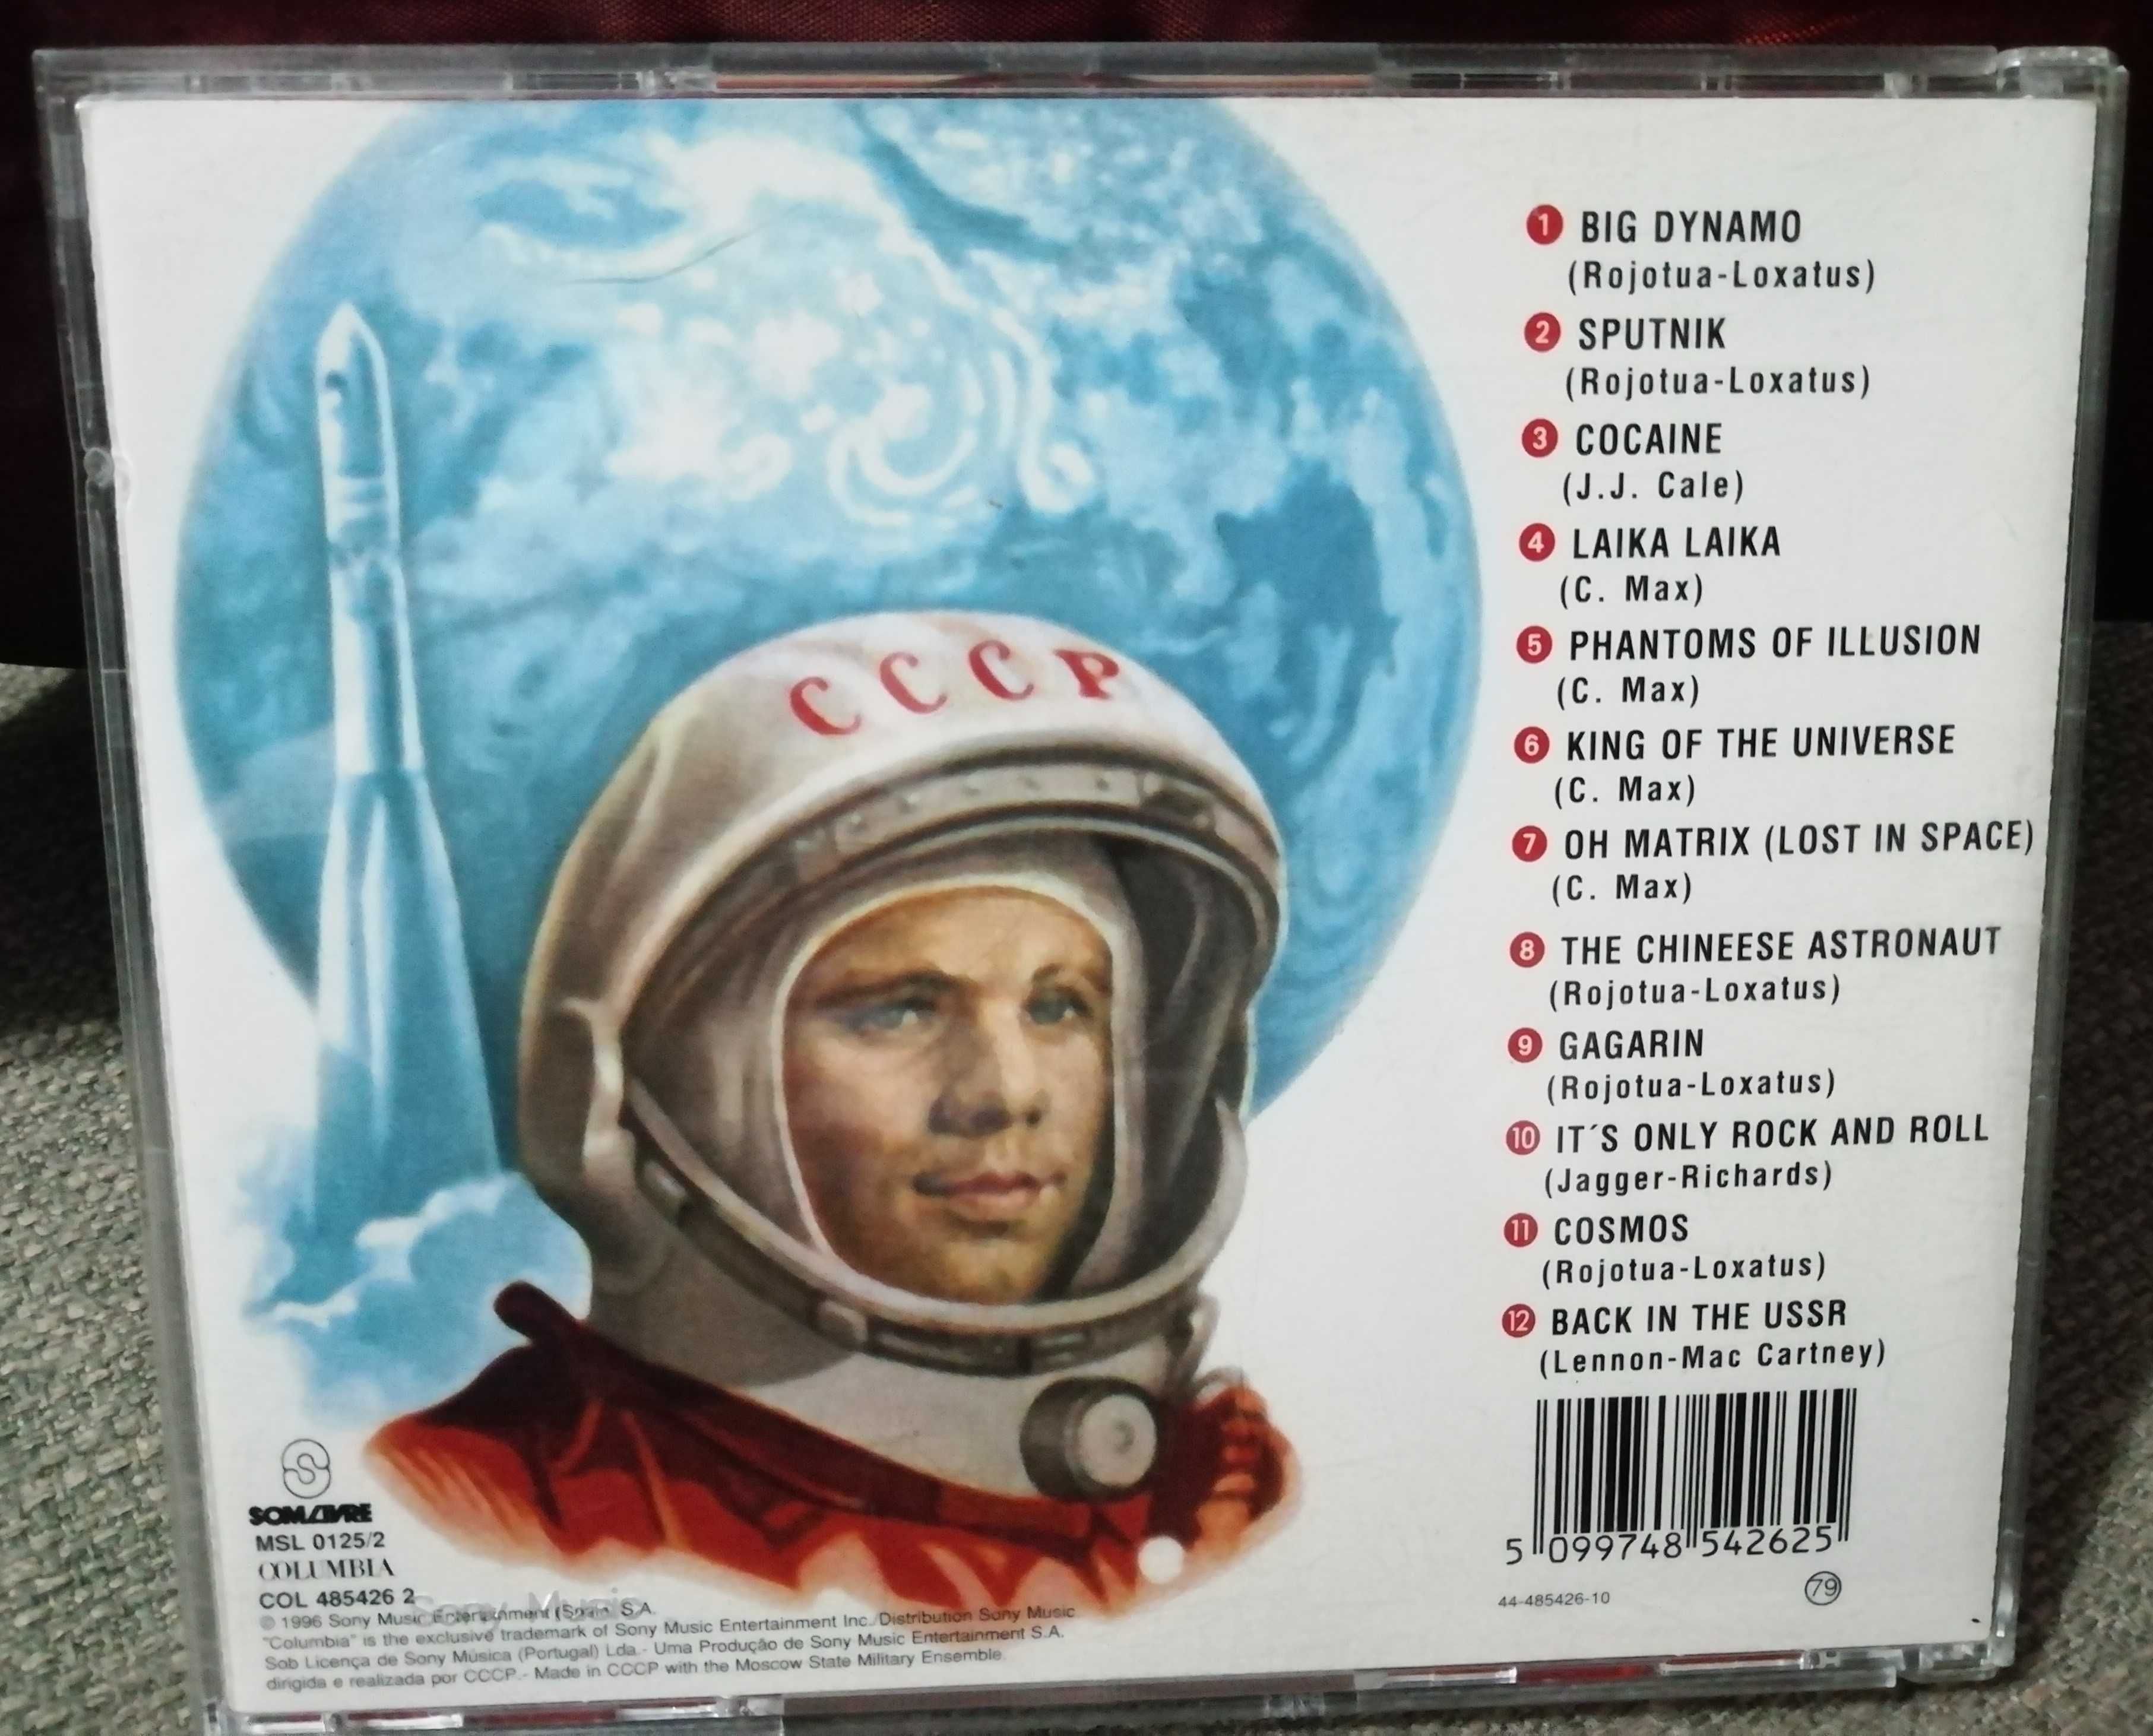 CCCP - Cosmos - CD 1996